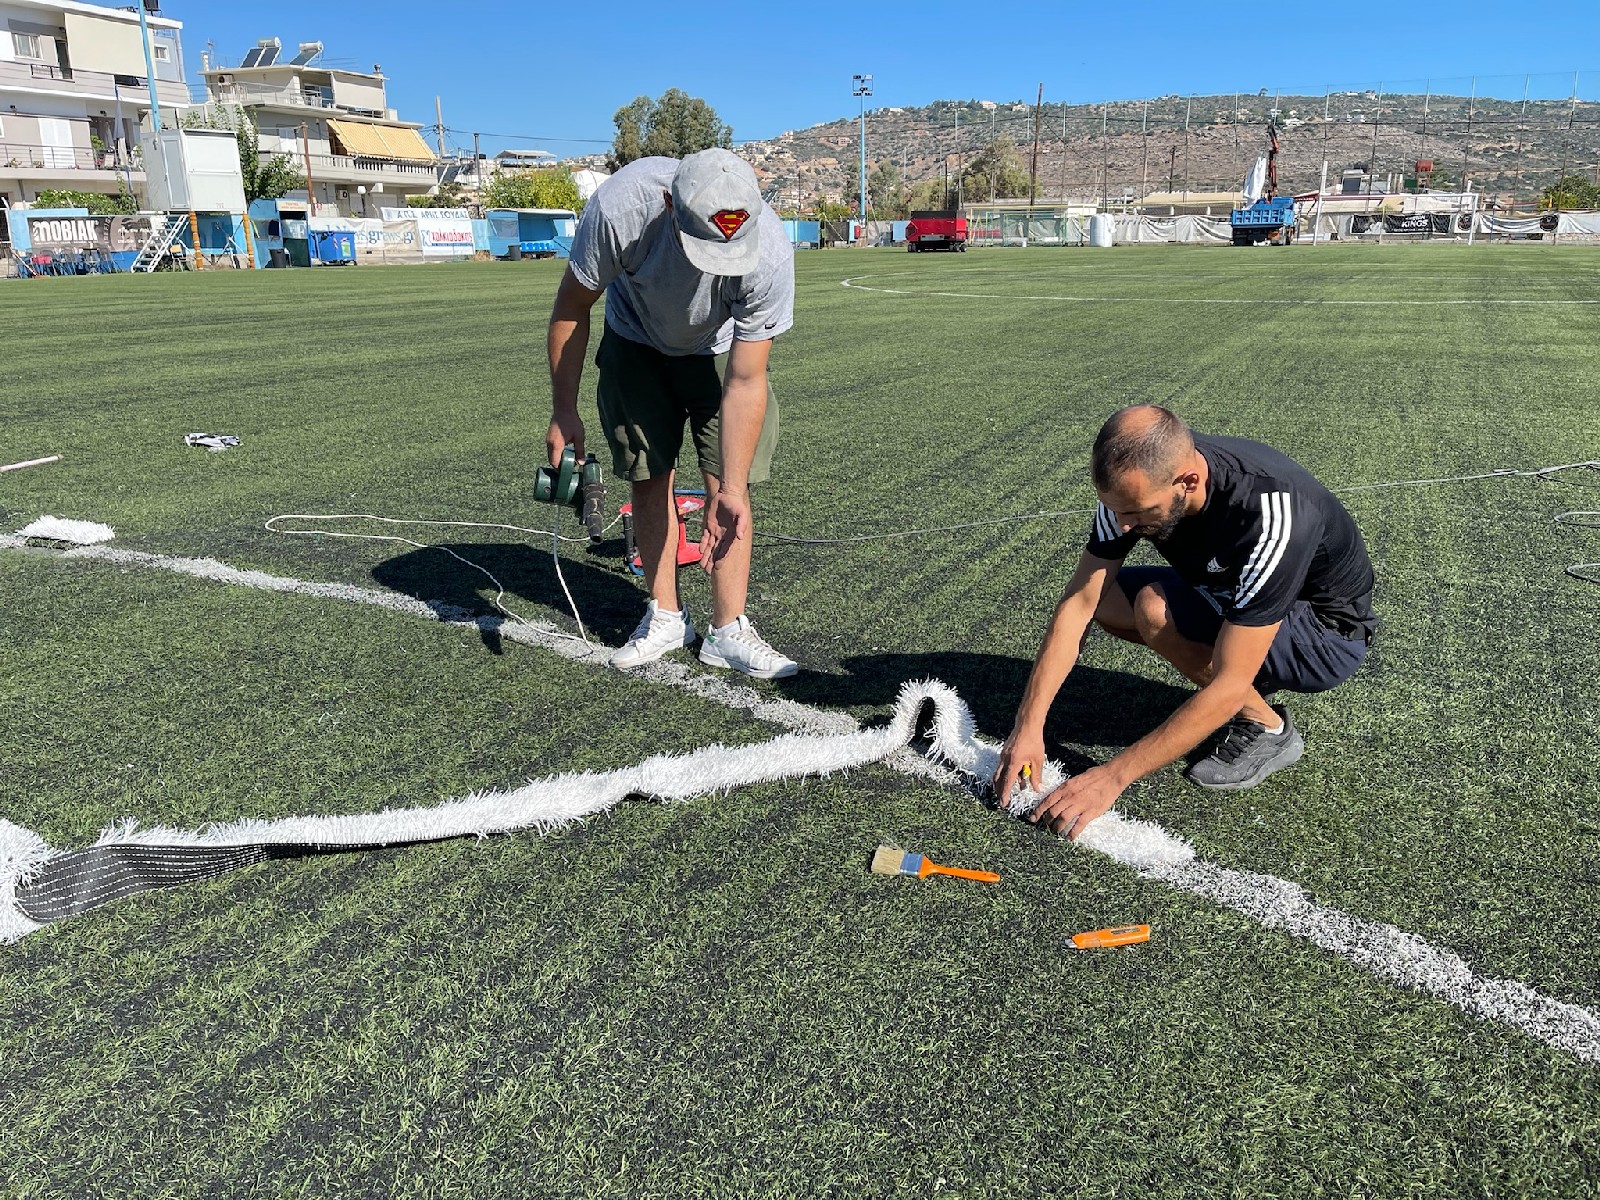 Σημαντική αναβάθμιση στα γήπεδα ποδοσφαίρου του Δήμου Χανίων για τη νέα σεζόν